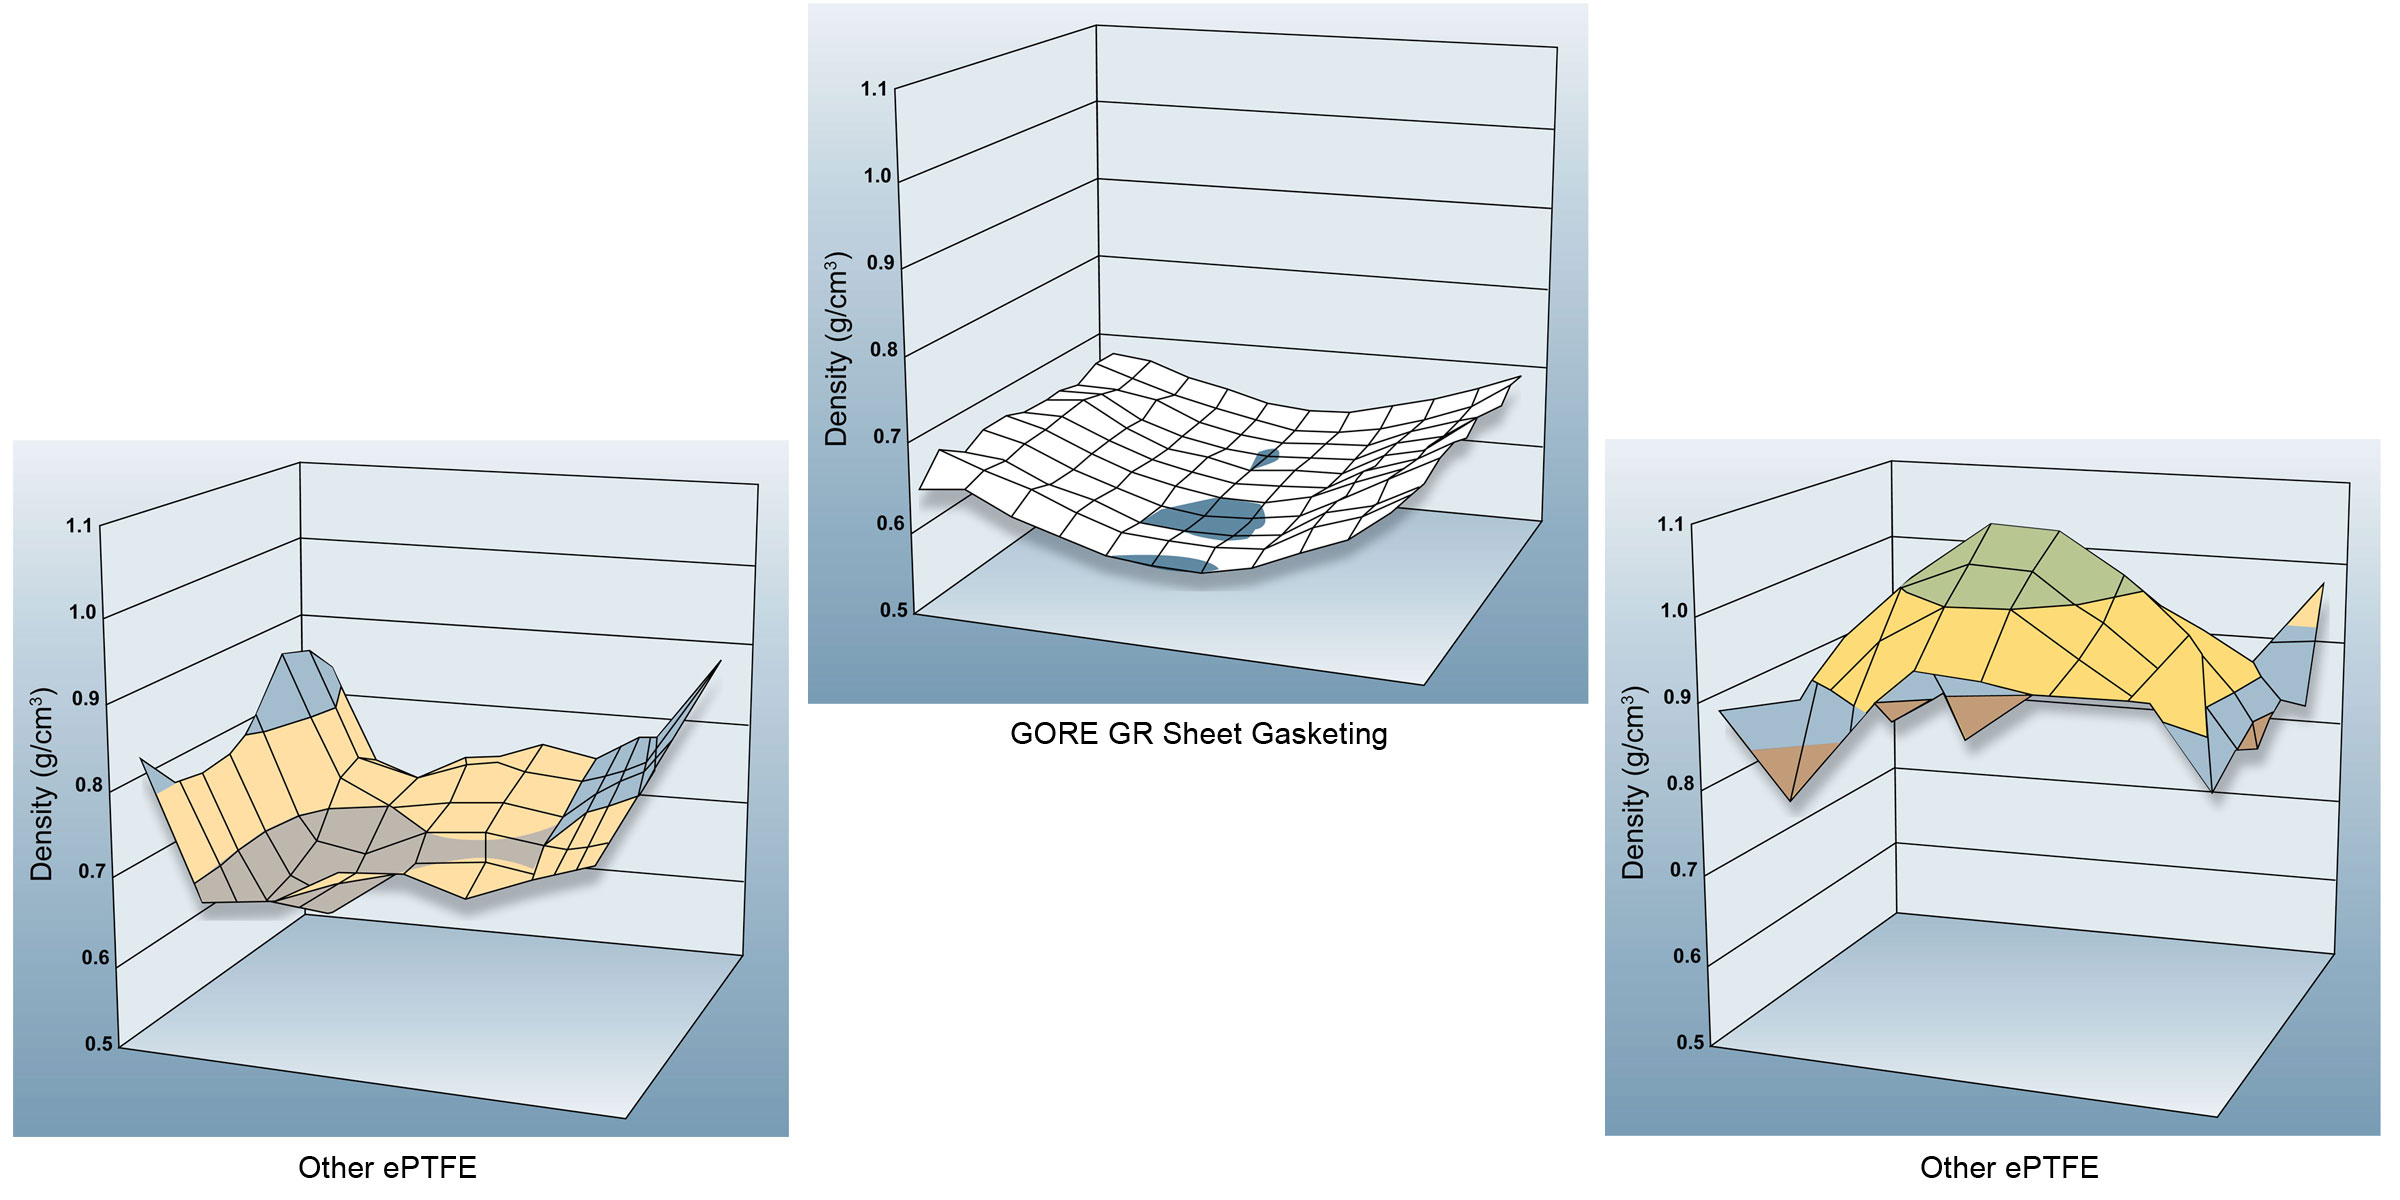 GR Sheet Gasketing vs. Other ePTFE